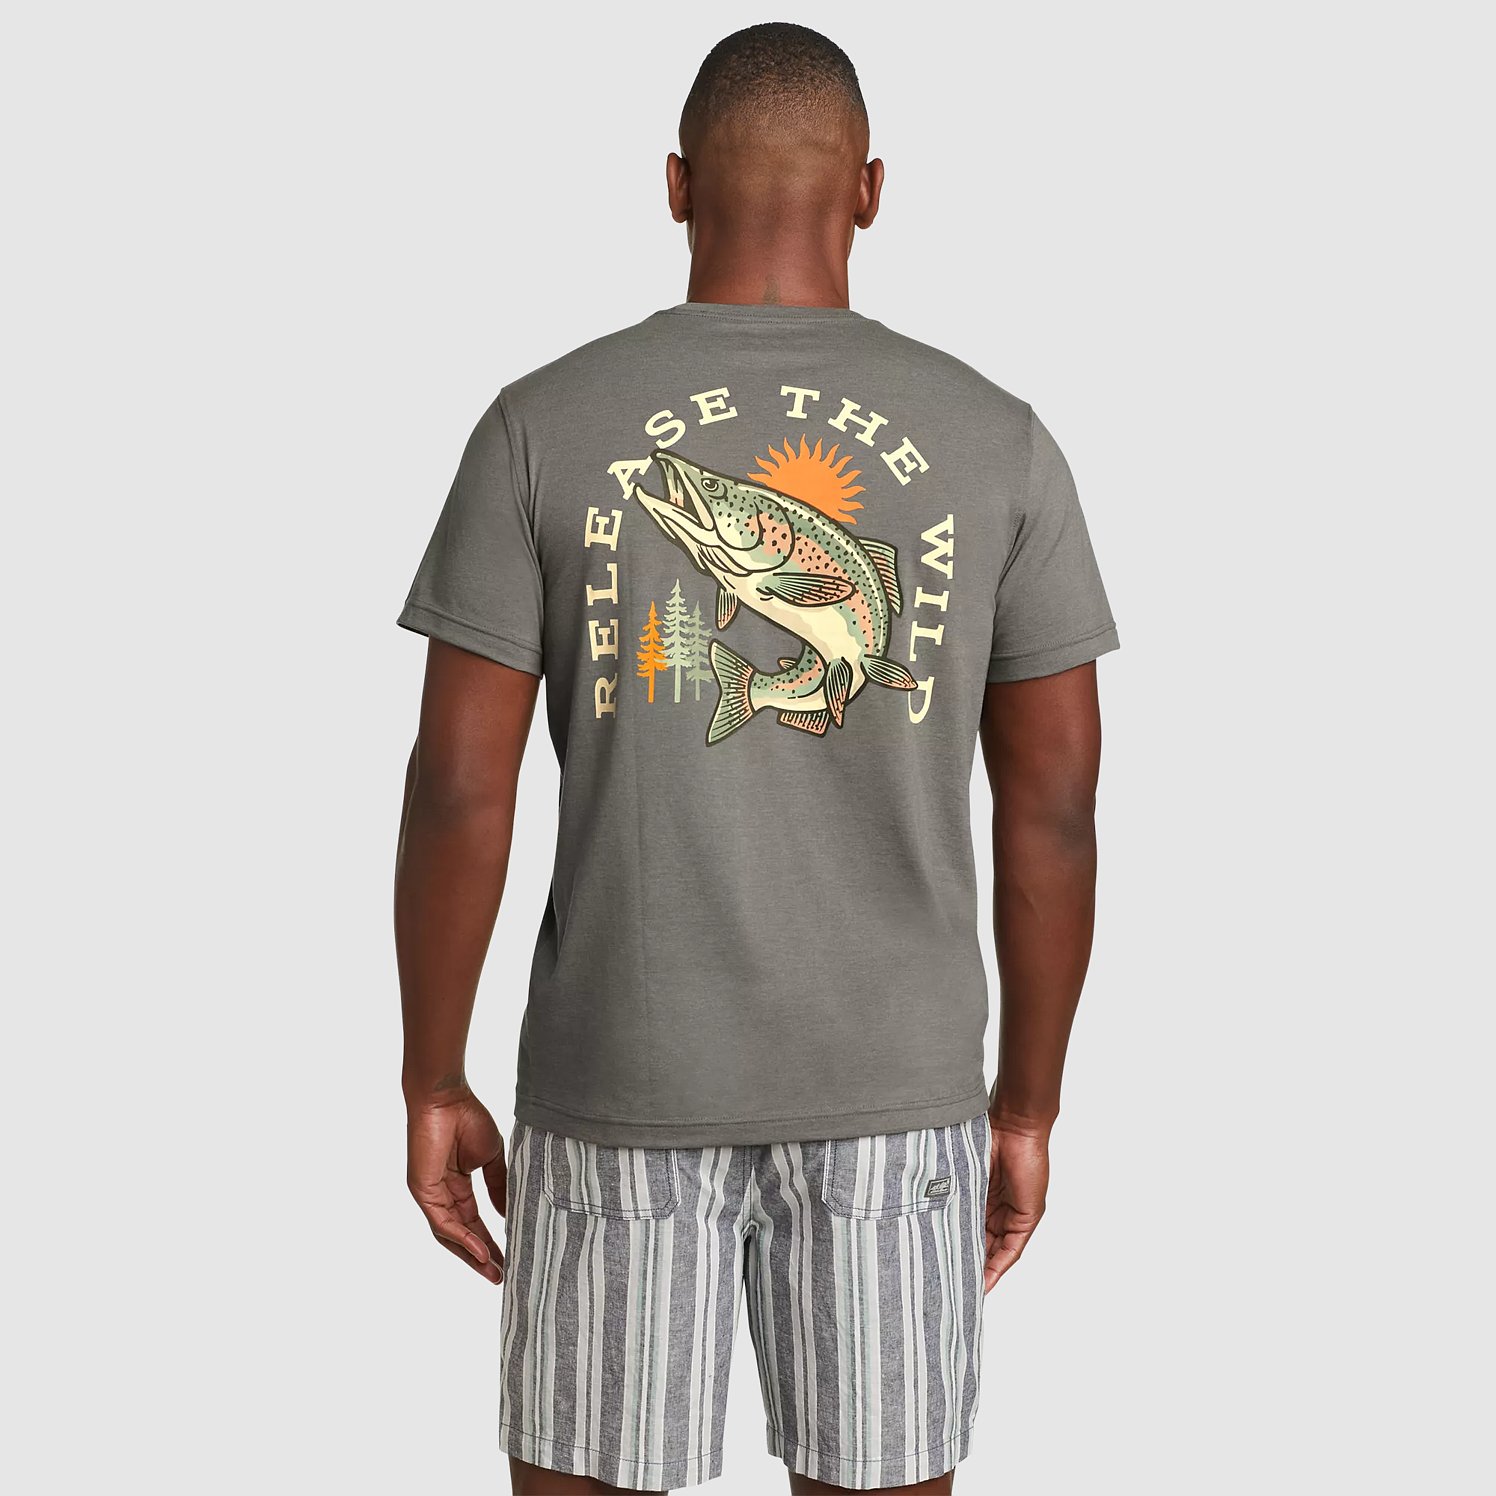 Eddie Bauer Retro Fish Graphic T-Shirt - Heather Gray - S